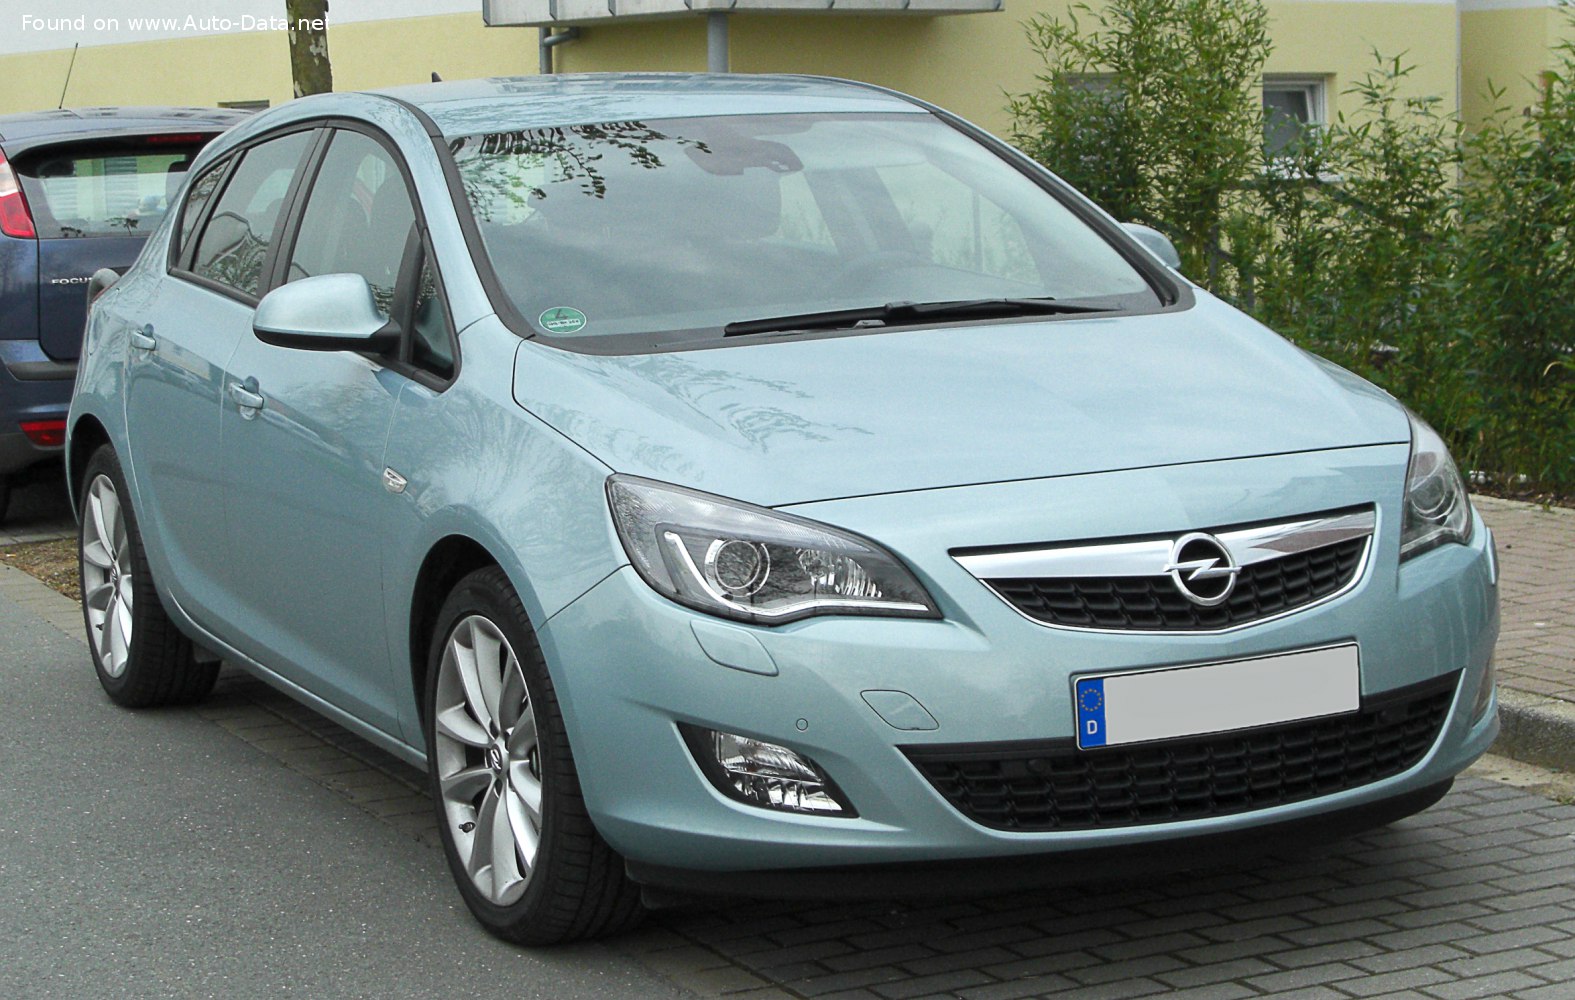 2010 Opel Astra J  Technical Specs, Fuel consumption, Dimensions